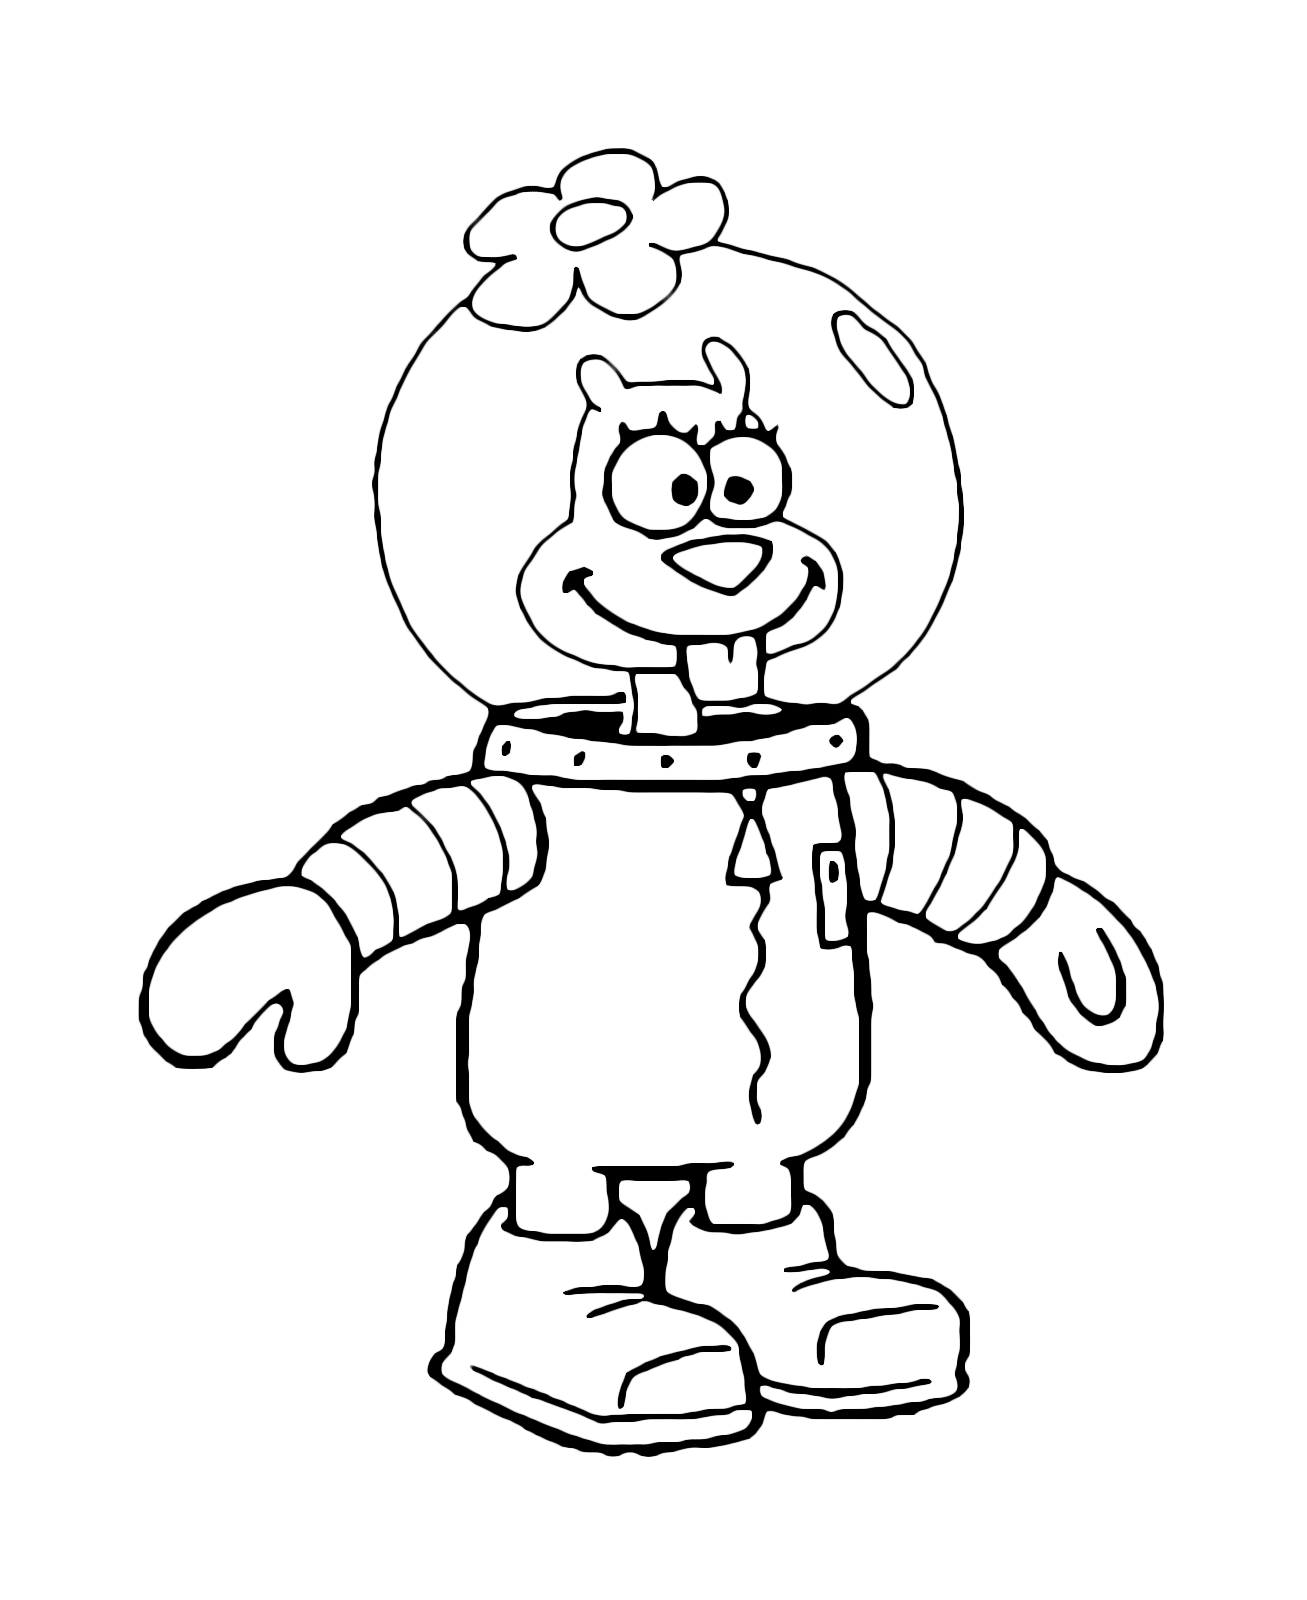 SpongeBob - The squirrel Sandy Cheeks in his overalls